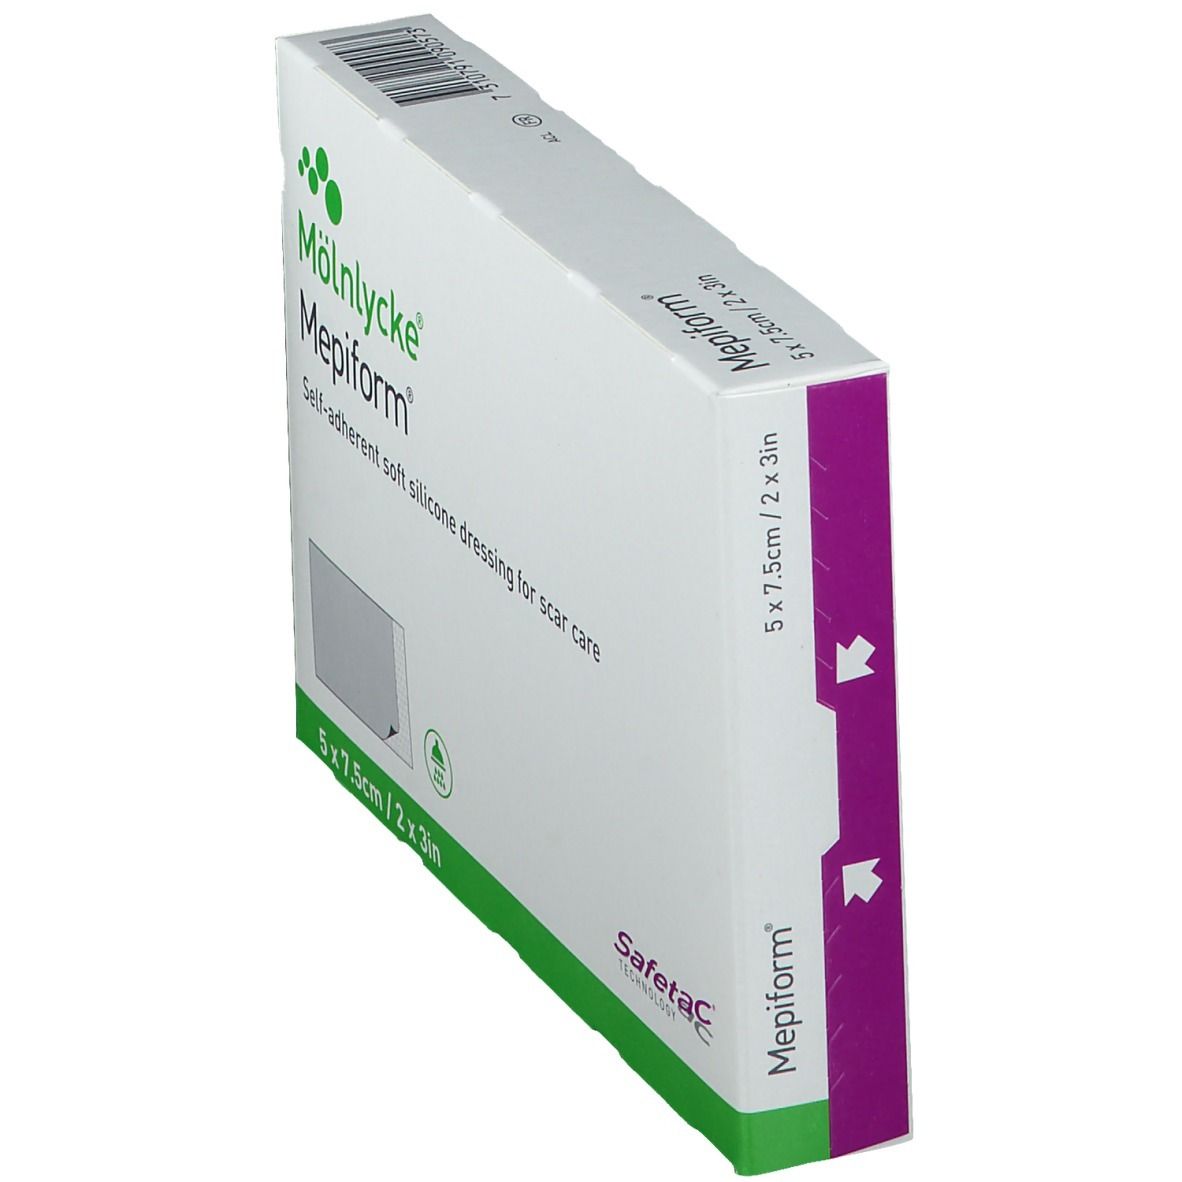 Mepiform® Pansement auto-adhésif siliconé Anti-Cicatrice 5 cm x 7,5 cm 5  pc(s) - Redcare Apotheke